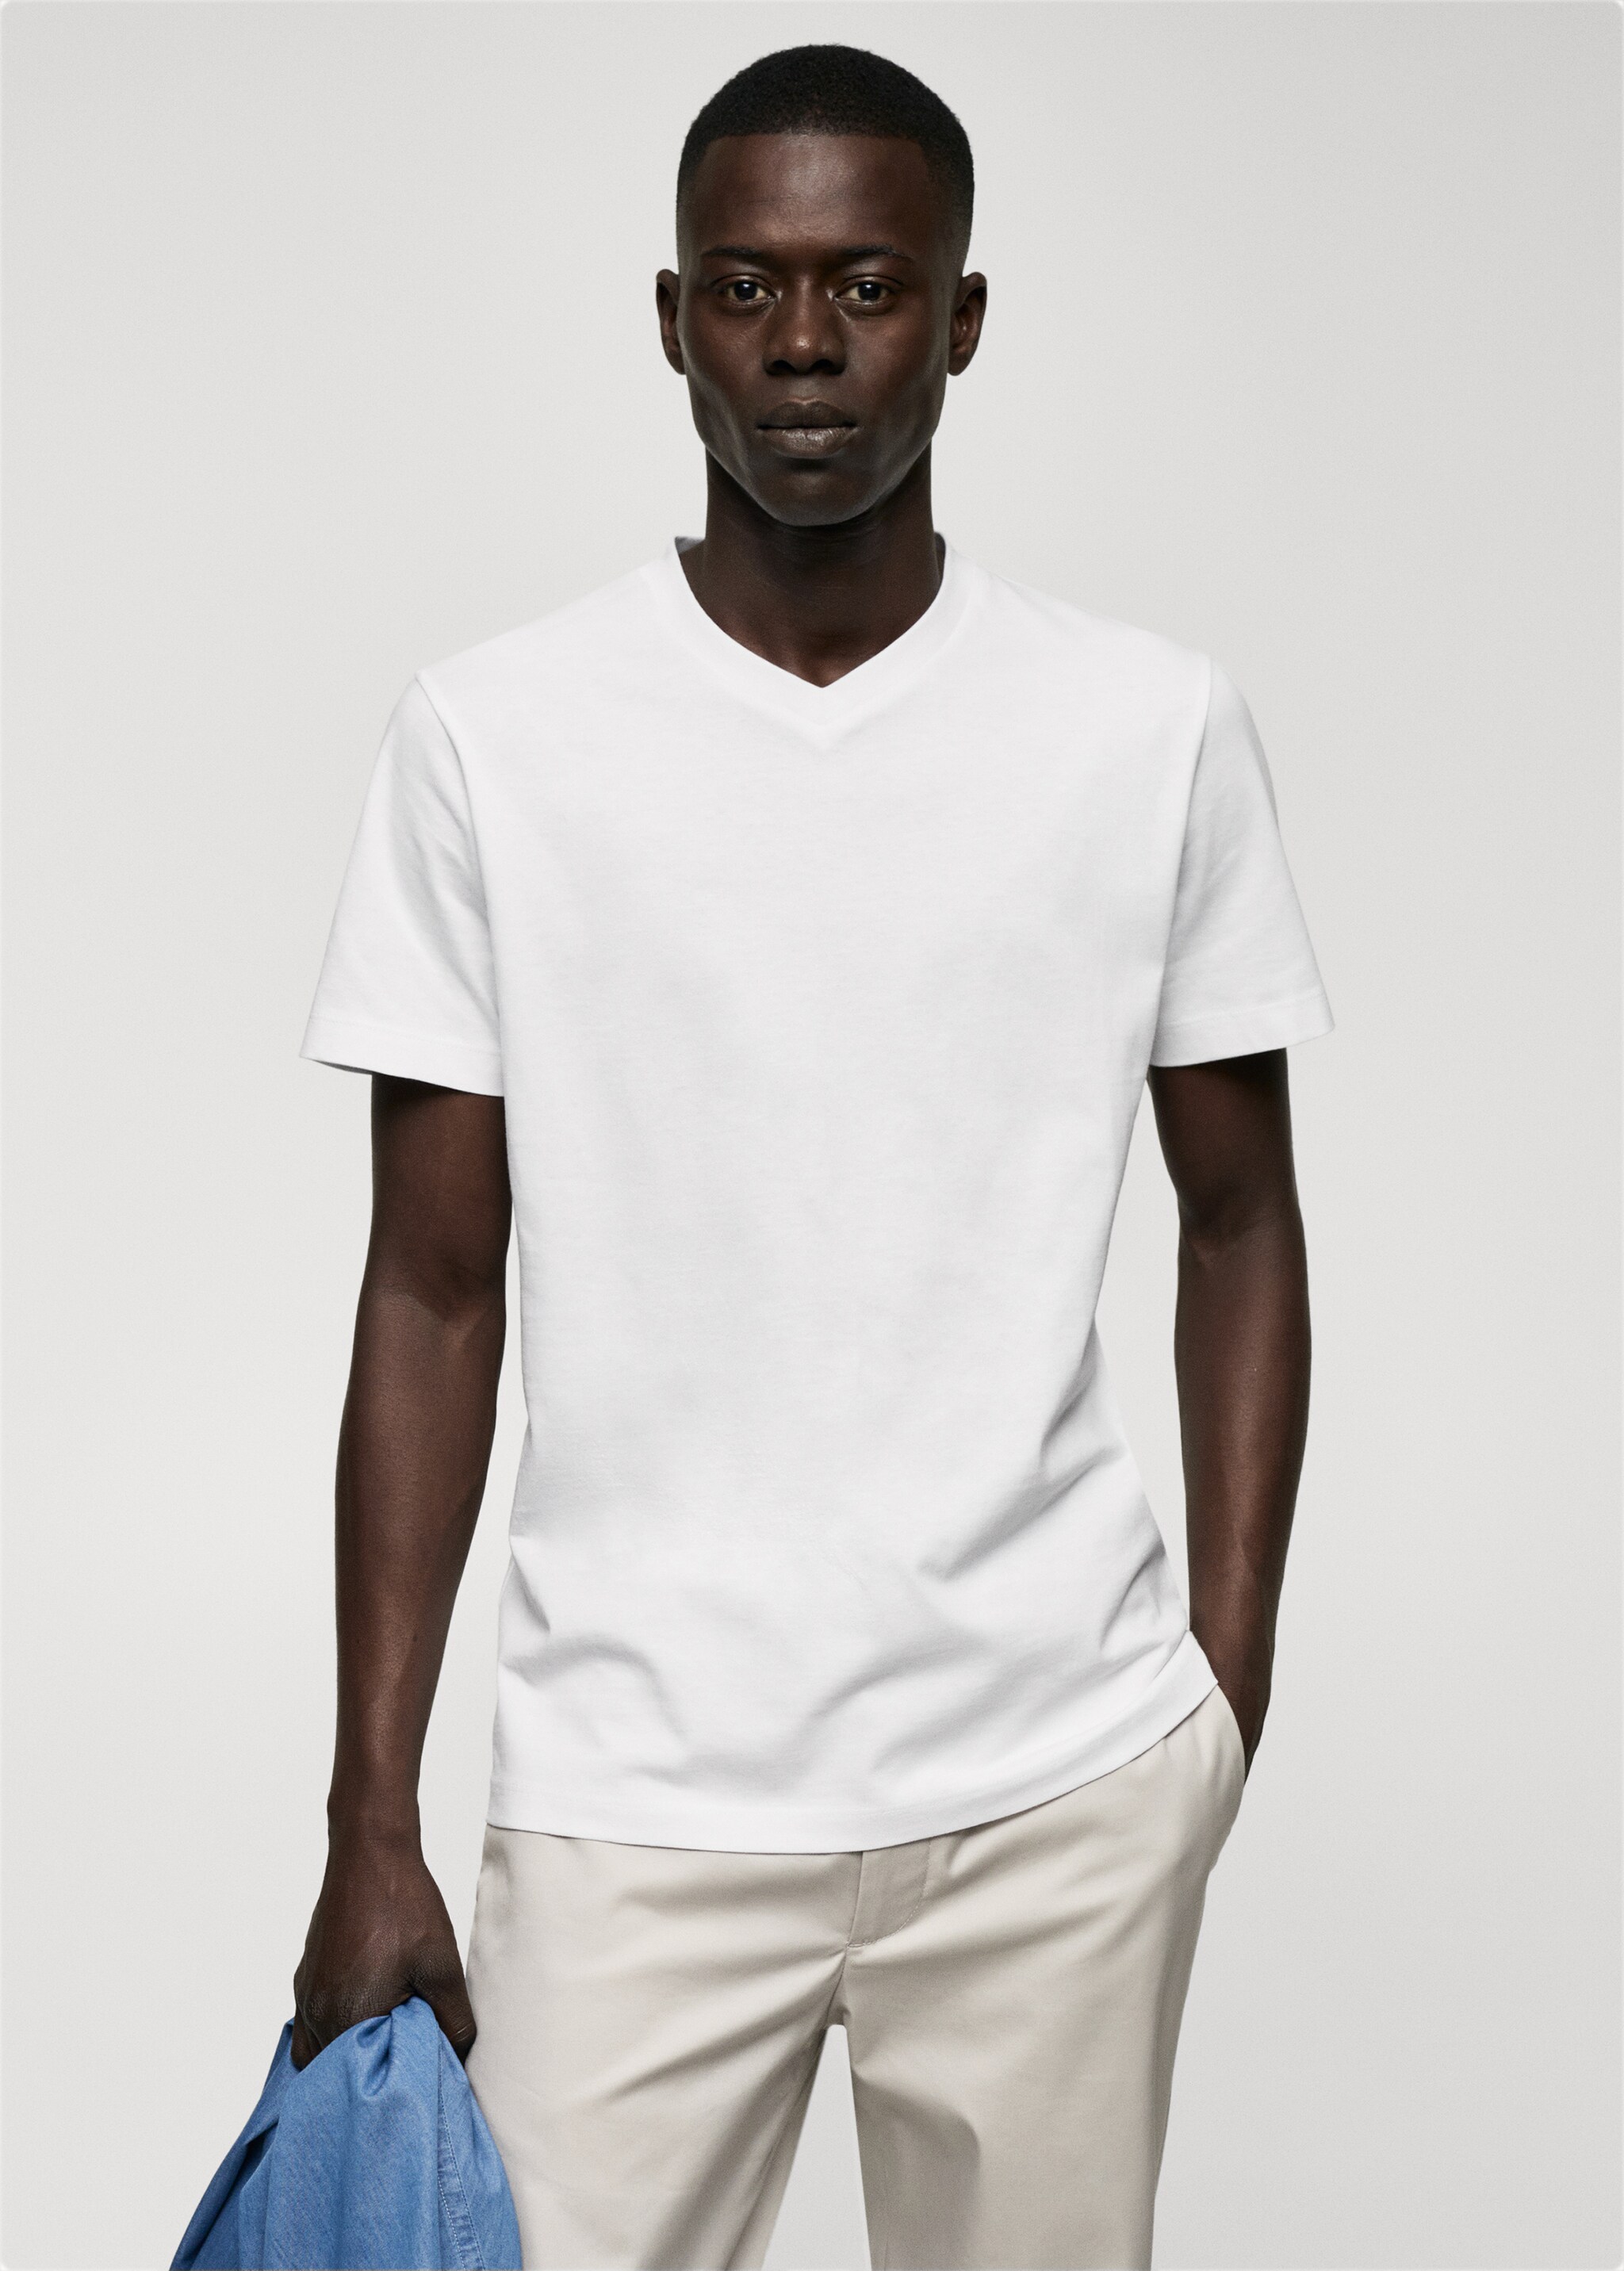 Basic cotton V-neck T-shirt - Medium plane